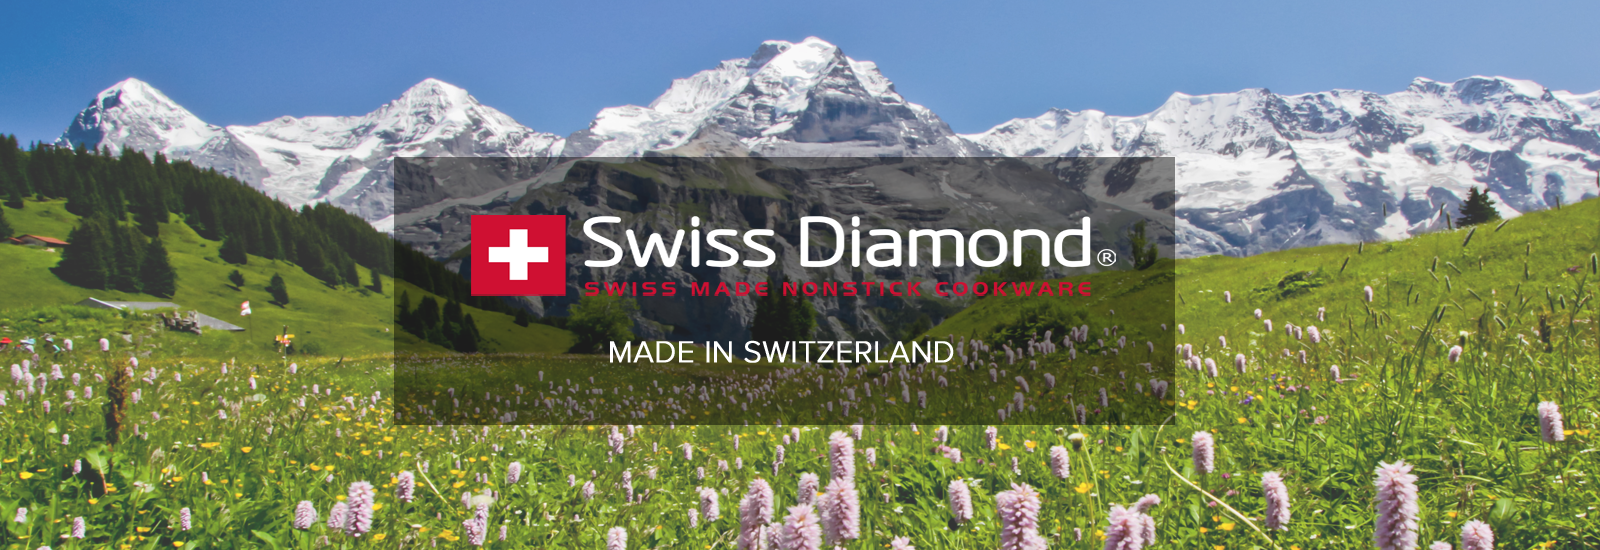 Swiss Diamond Made in Switzerland